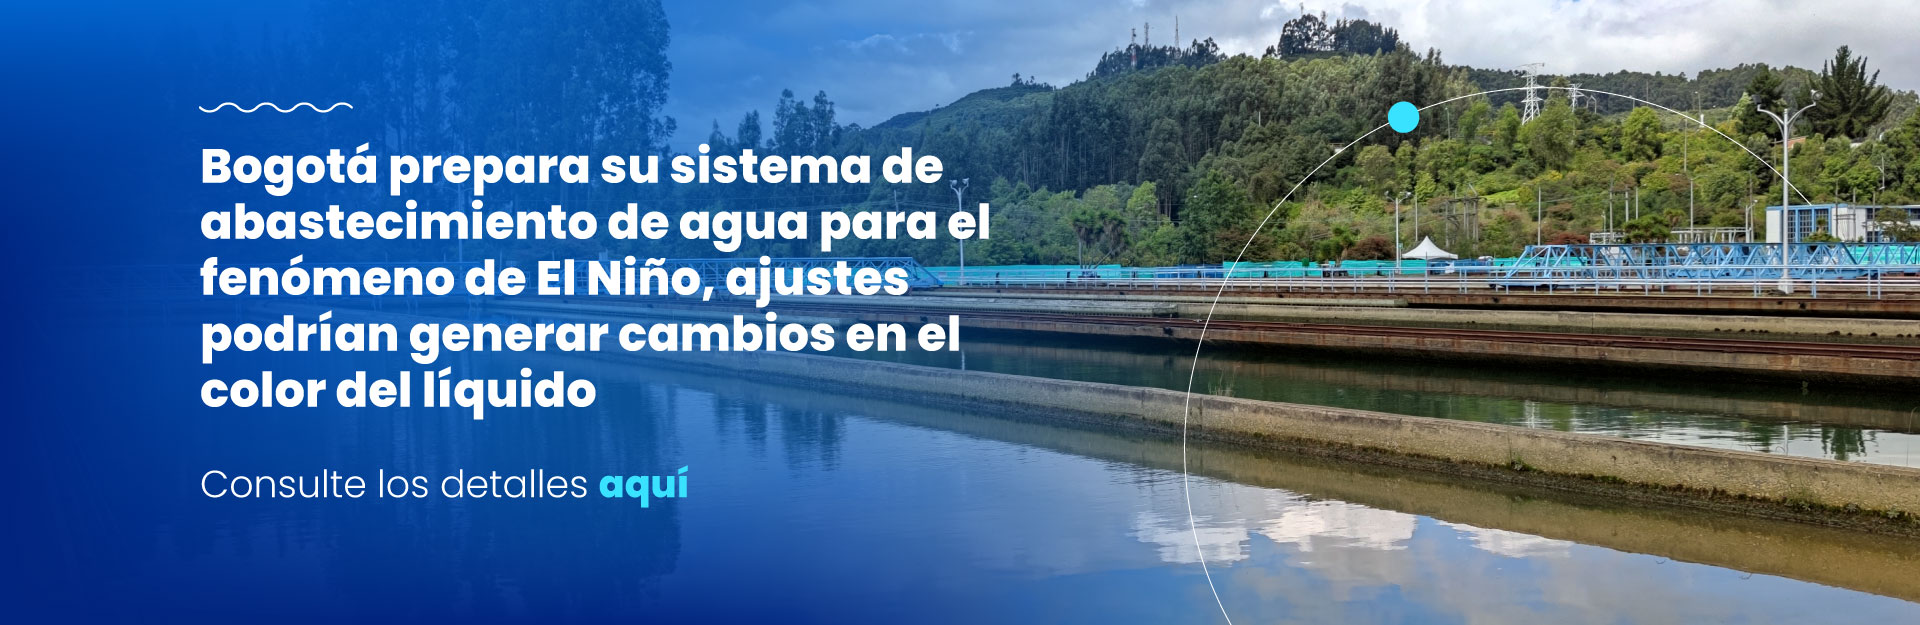 Bogotá prepara su sistema de abastecimiento de agua para el fenómeno de El Niño, ajustes podrían generar cambios en el color del líquido